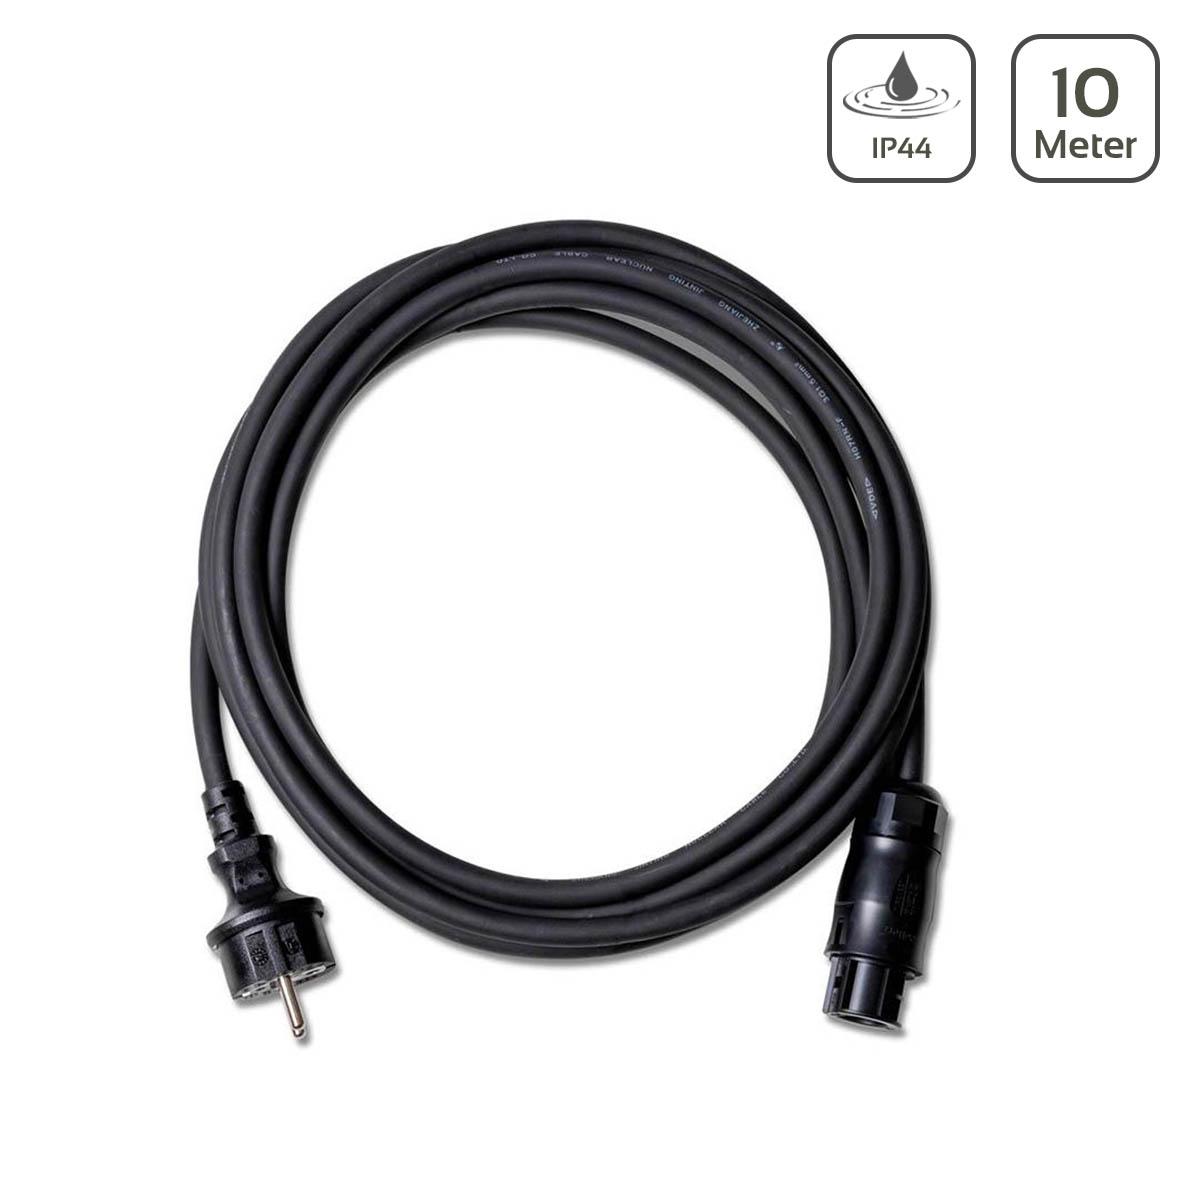 Netz Anschlusskabel Betteri BC01 auf Schuko Steckdose 10 Meter AC Kabel 3×1,5mm²